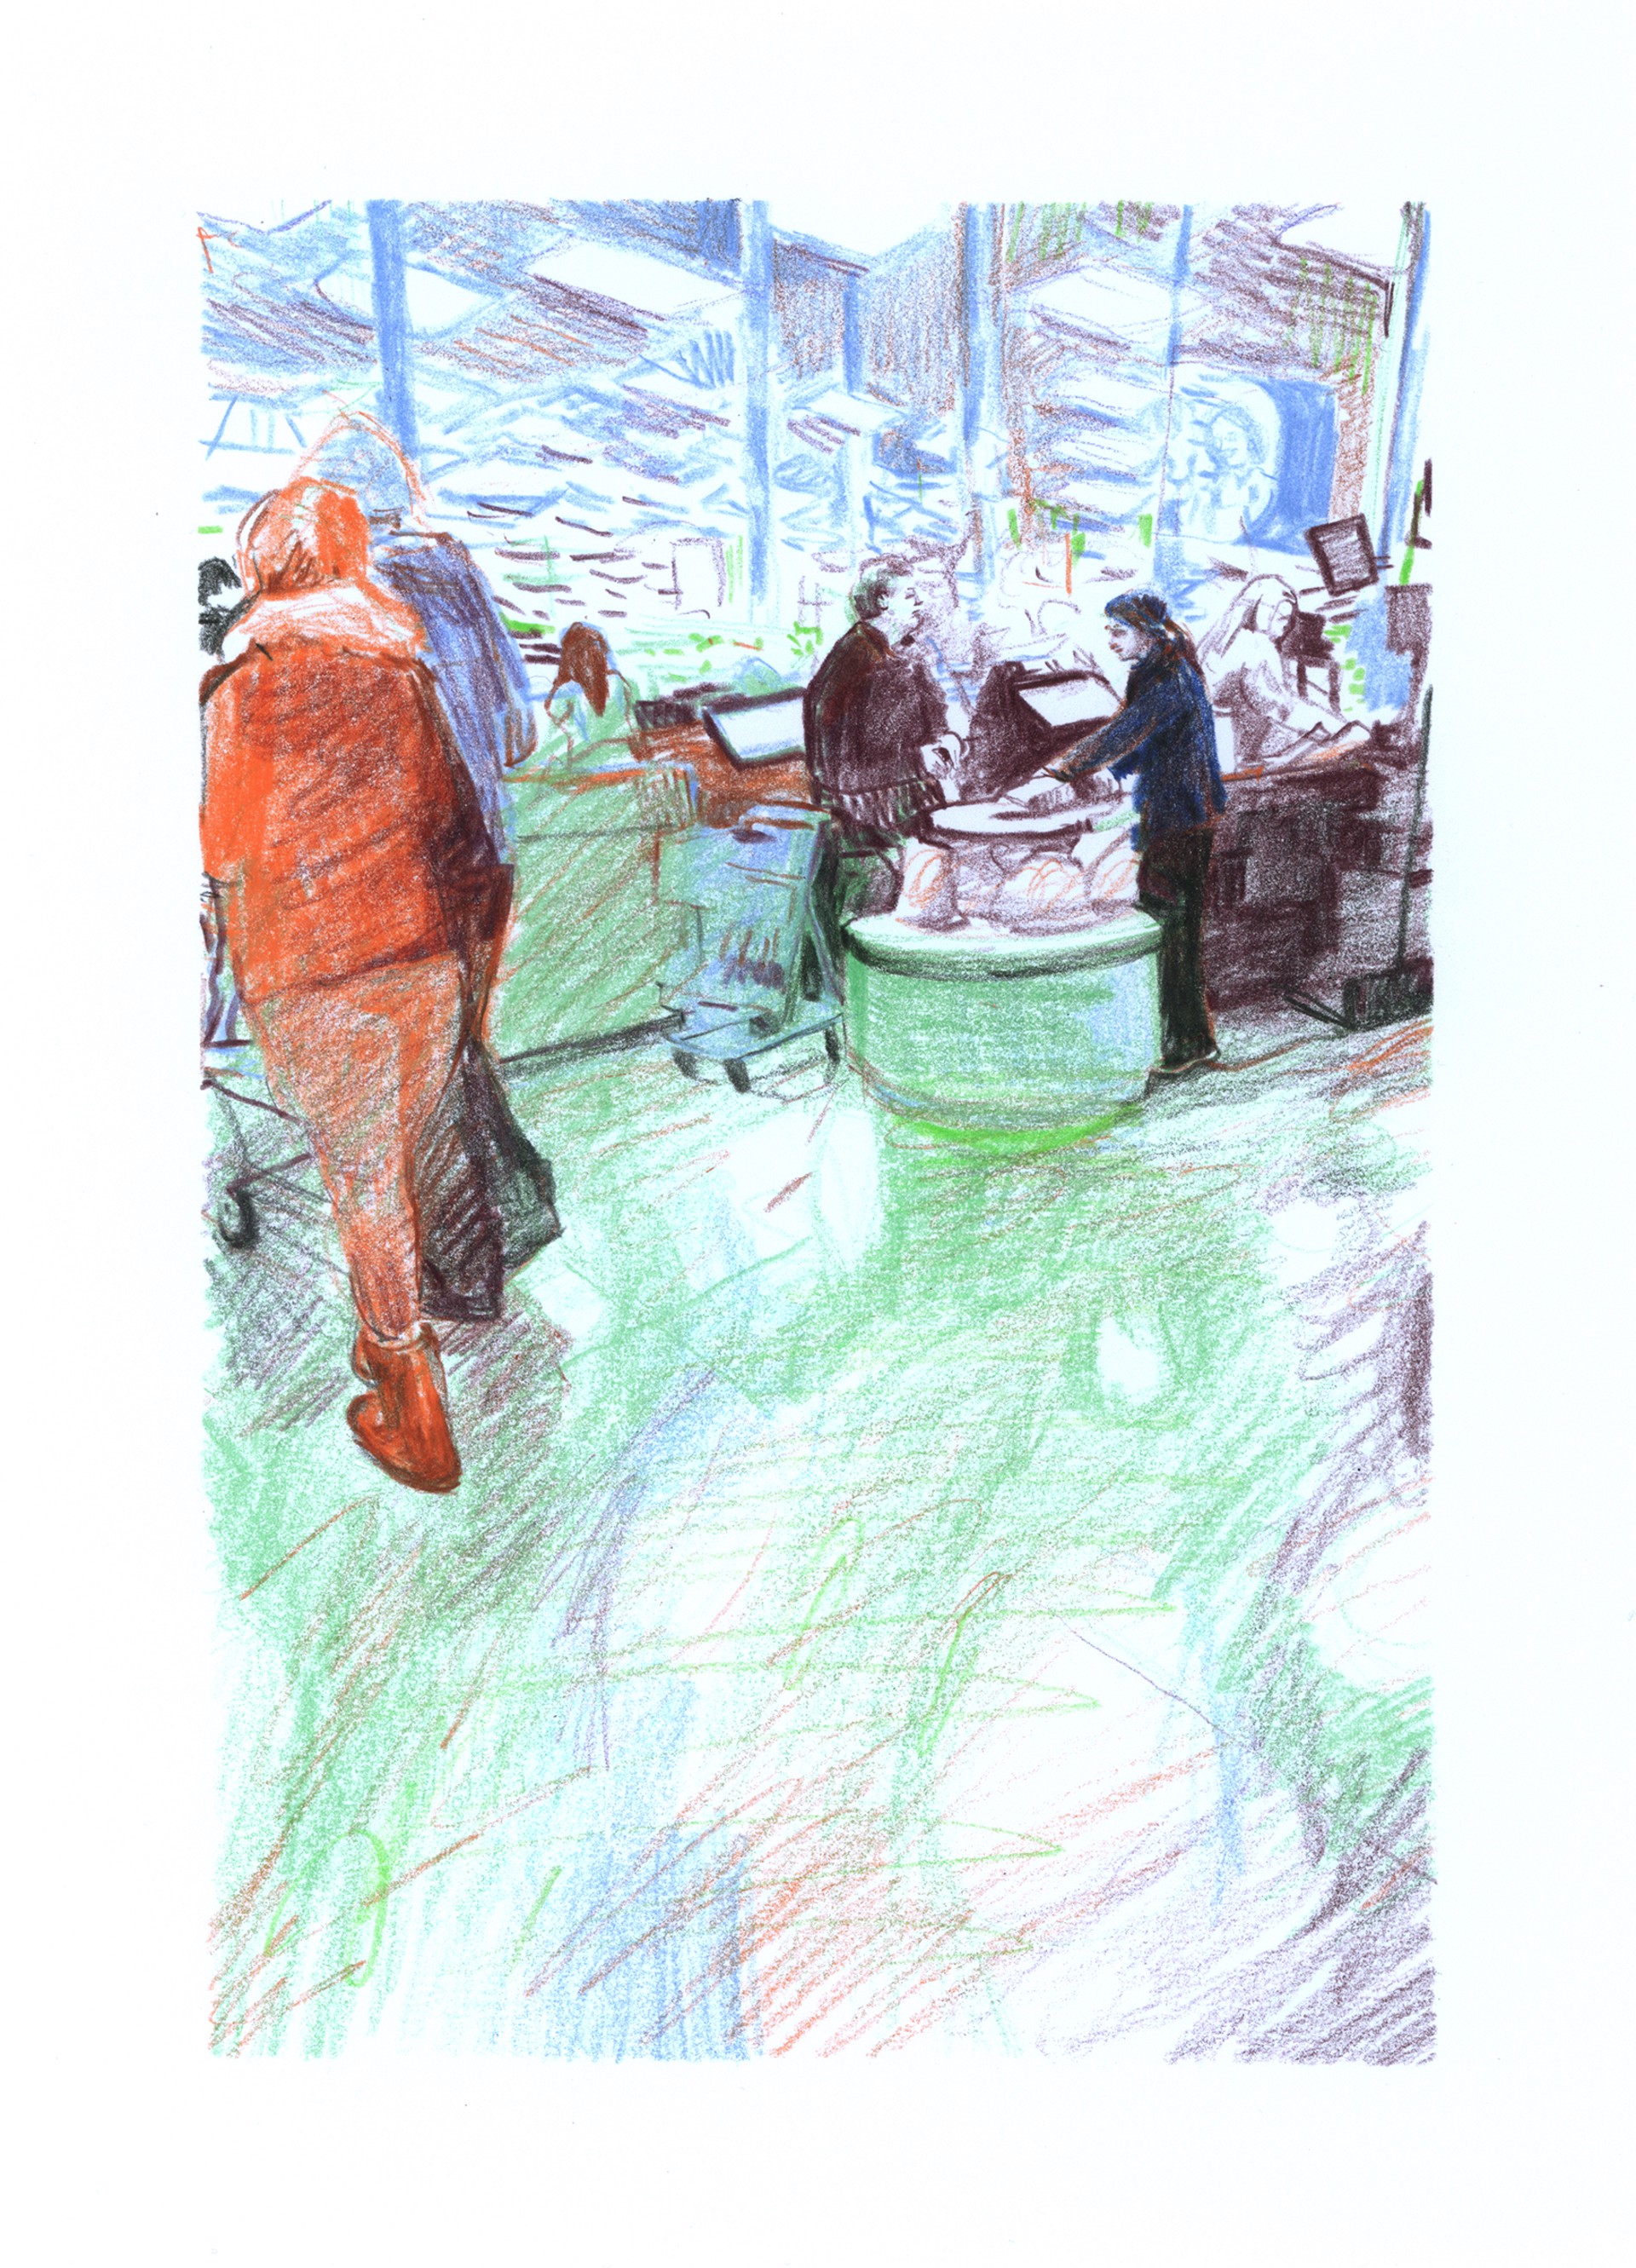 Marketplace/Cashier #35 by Eilis Crean